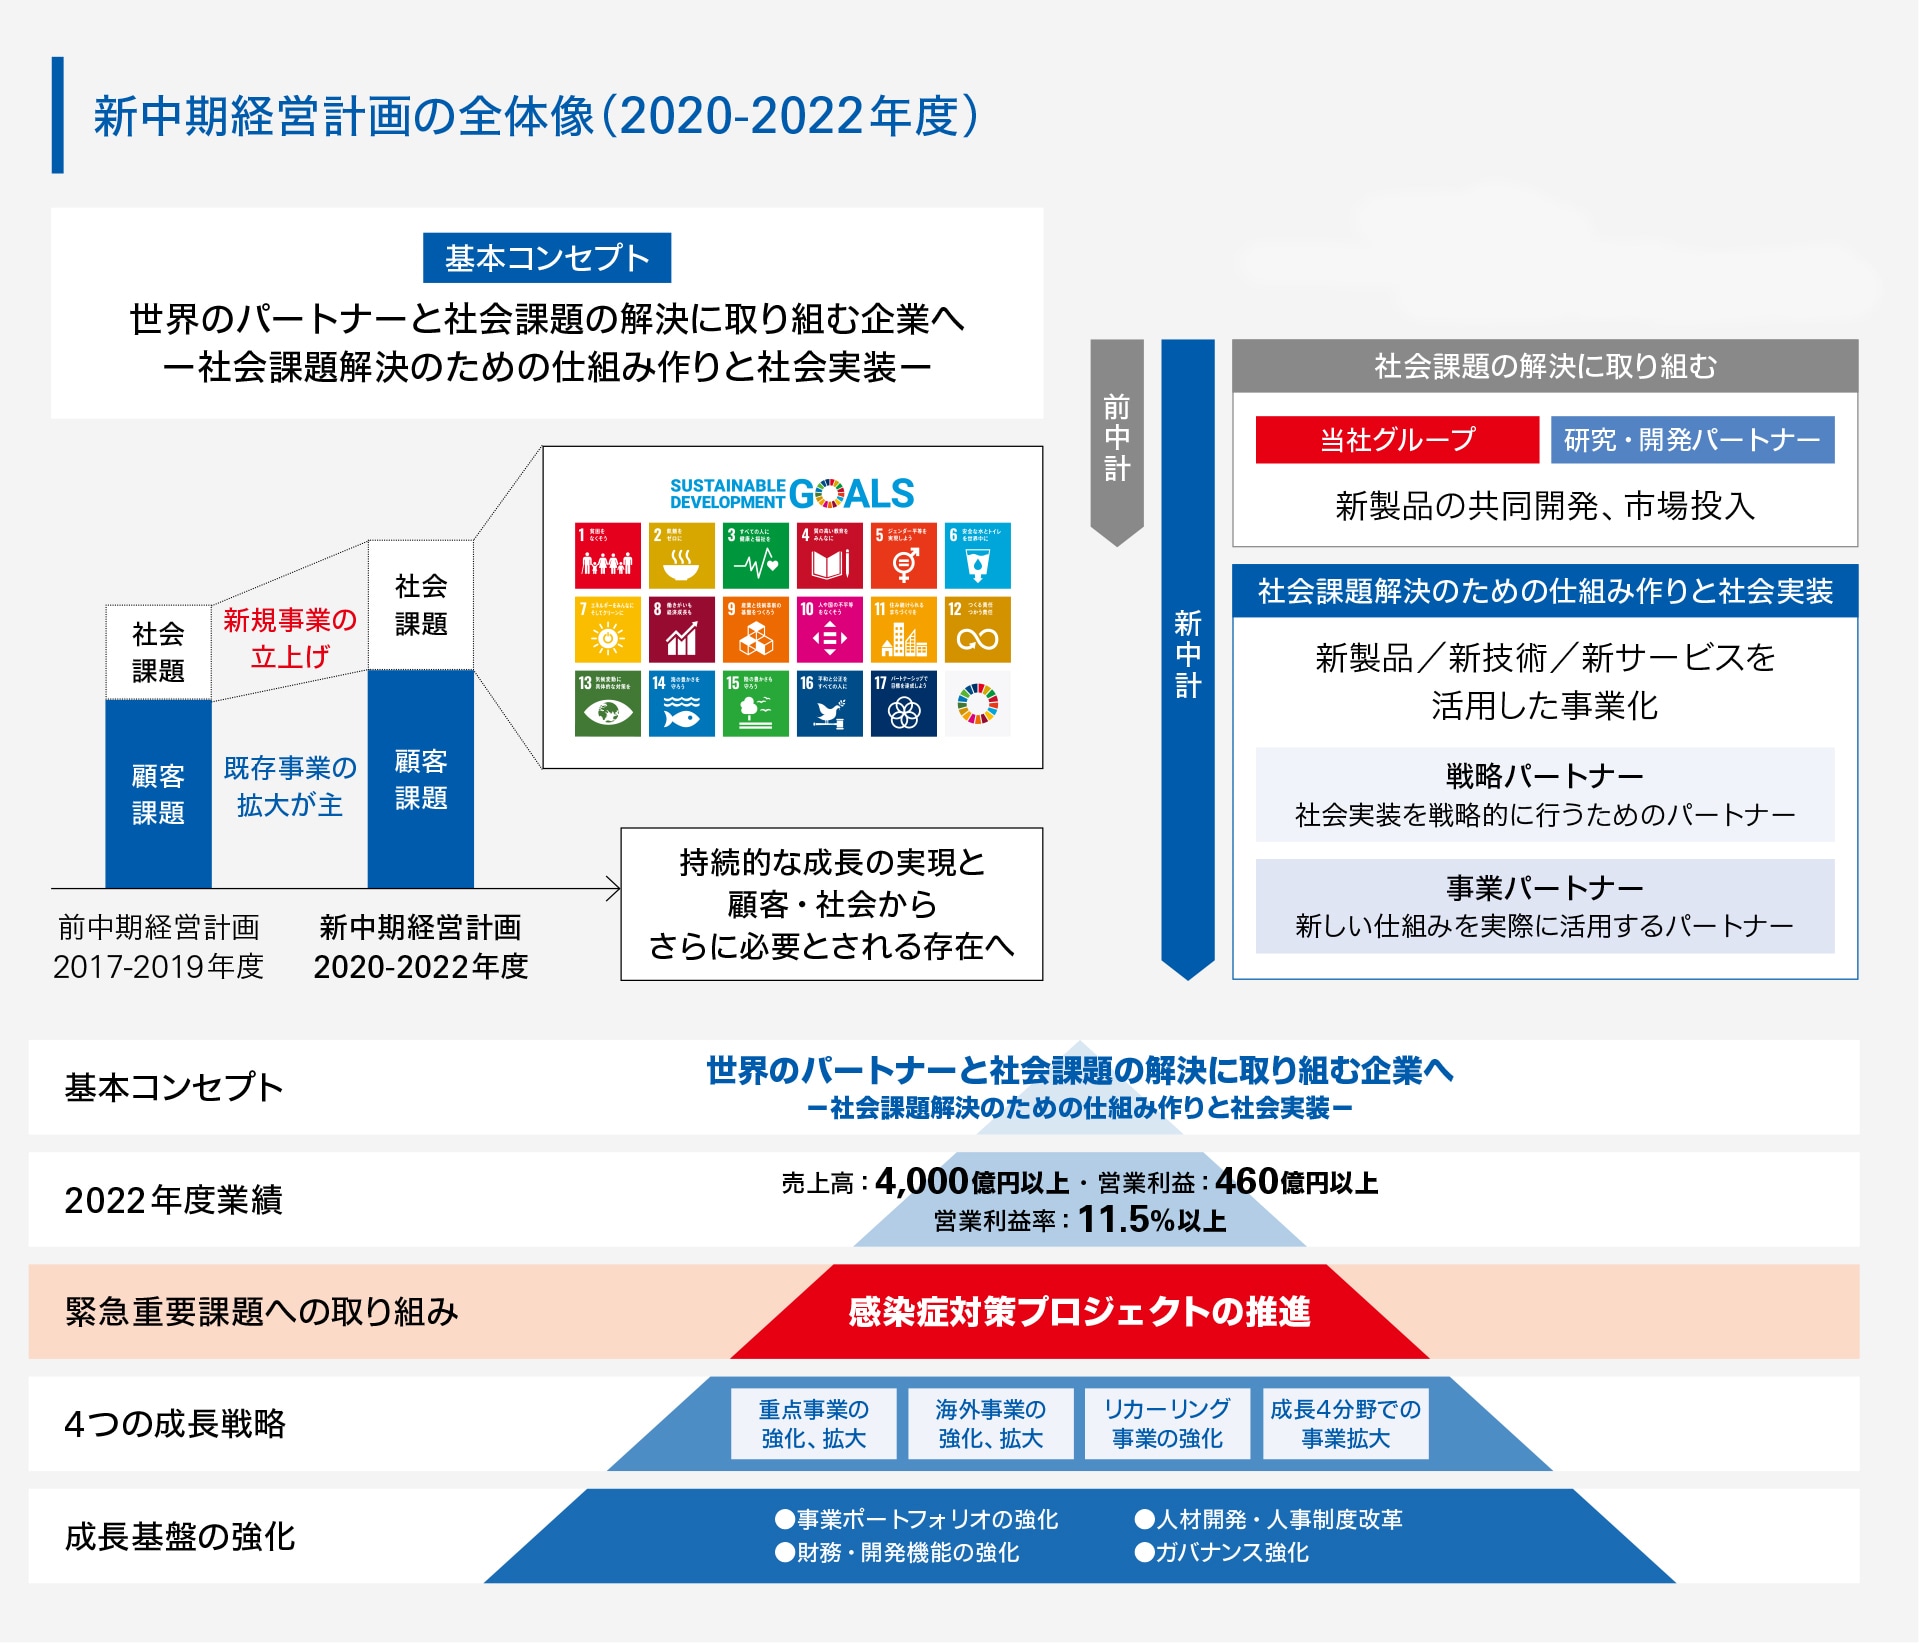 2020-2022年度 中期経営計画の全体像